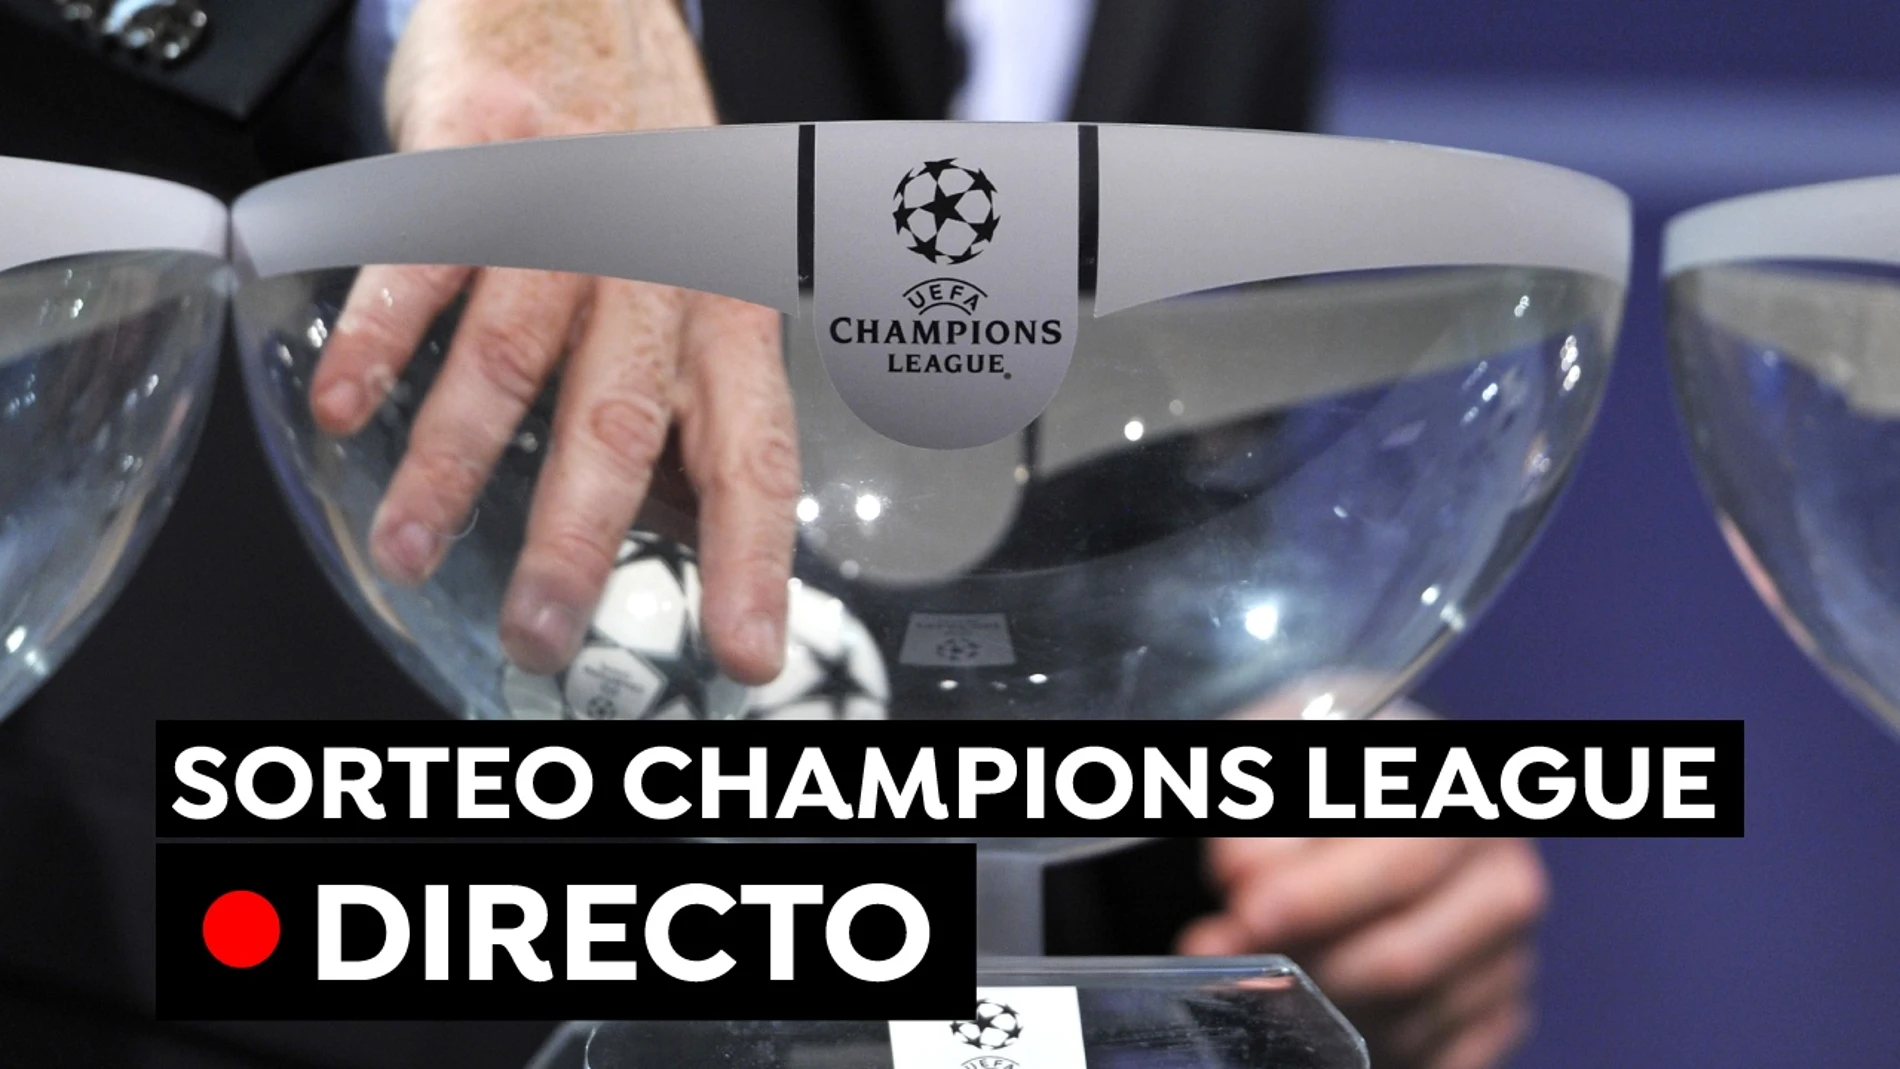 Sorteo Champions League: Resultado y cruces en directo online